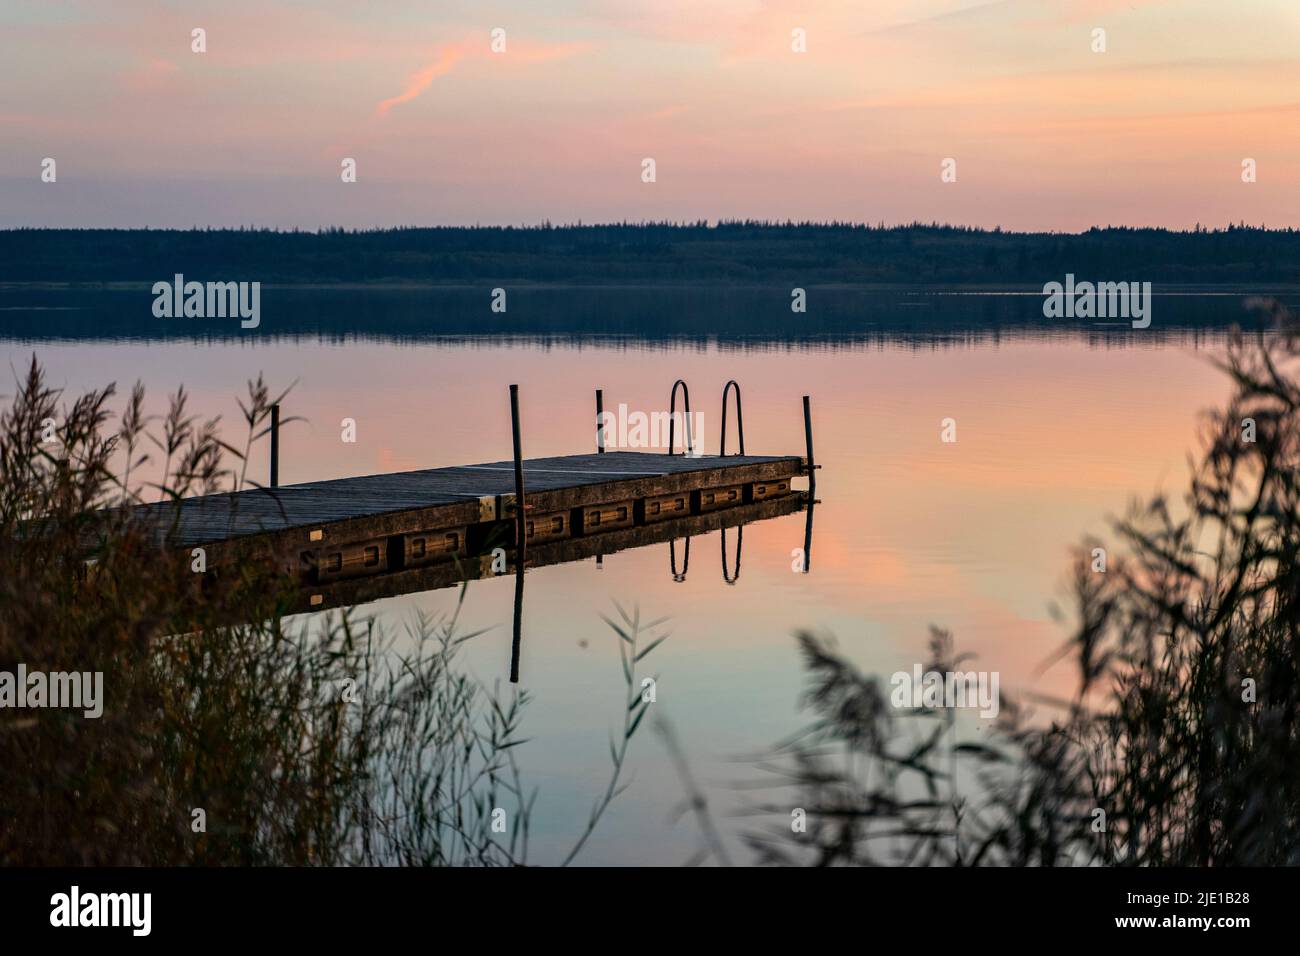 Dock in the Sunset at Vandet Lake, Denmark Stock Photo